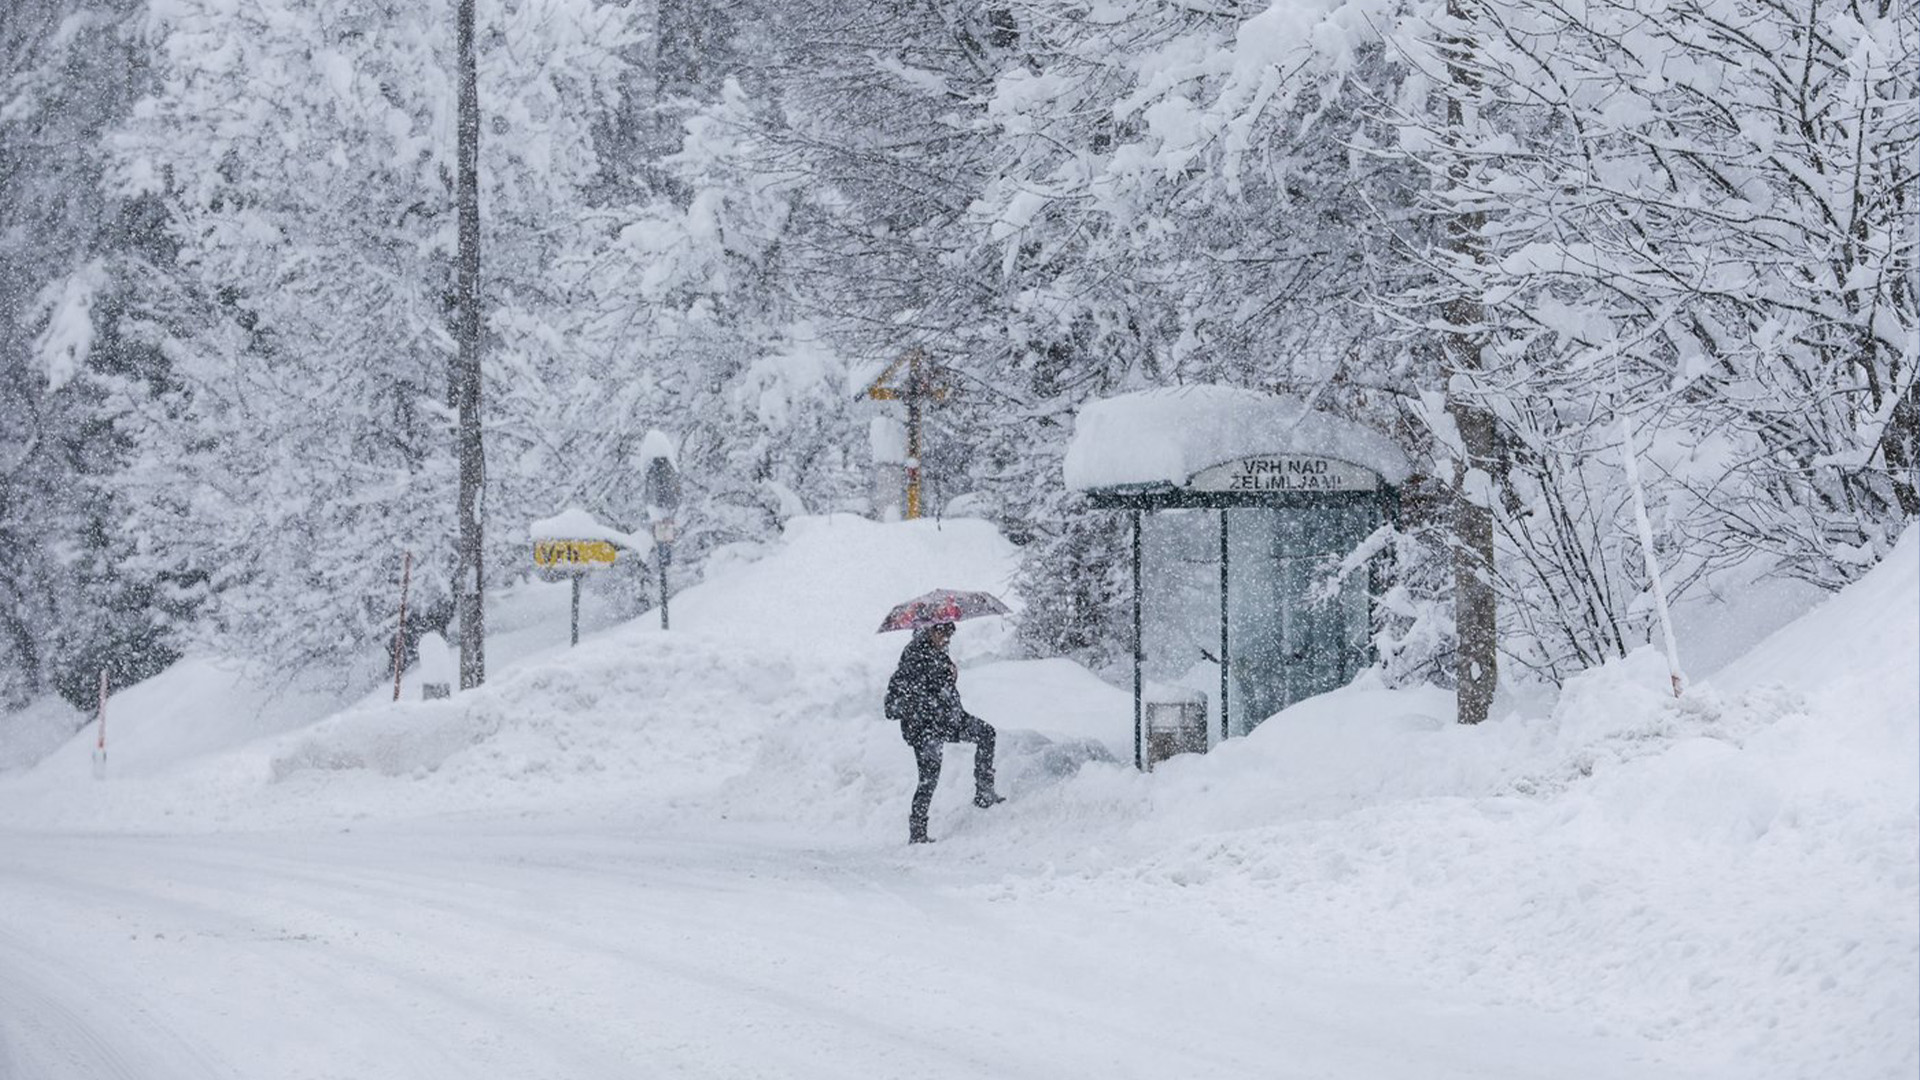 La tempête de neige annoncée lundi dernier pour plusieurs régions du Québec, de l’Ontario et du Nouveau-Brunswick commencera à s’abattre à compter de ce mercredi soir, selon des bulletins météorologiques transmis en fin de nuit par Environnement Canada.